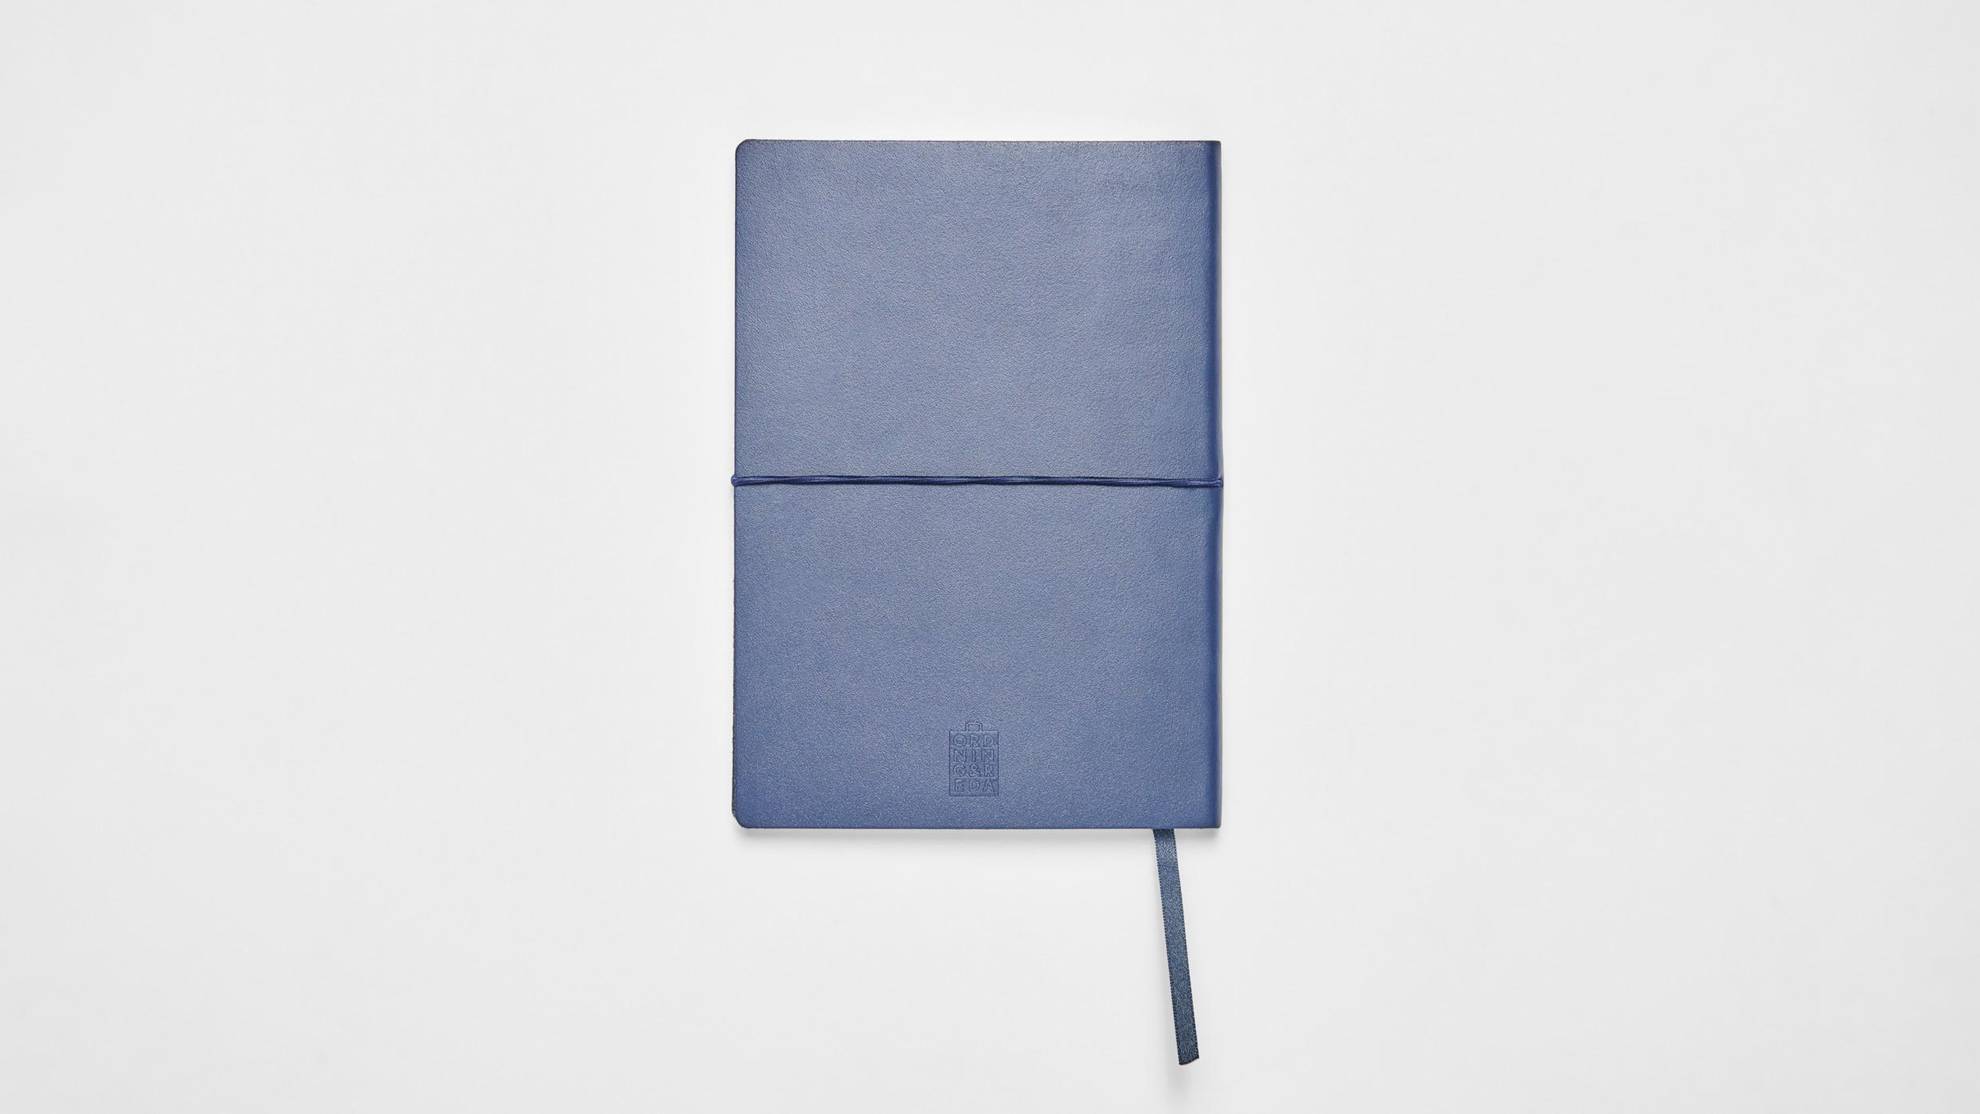 Un cahier à la couverture rigide bleue foncée est posé sur une surface blanche.